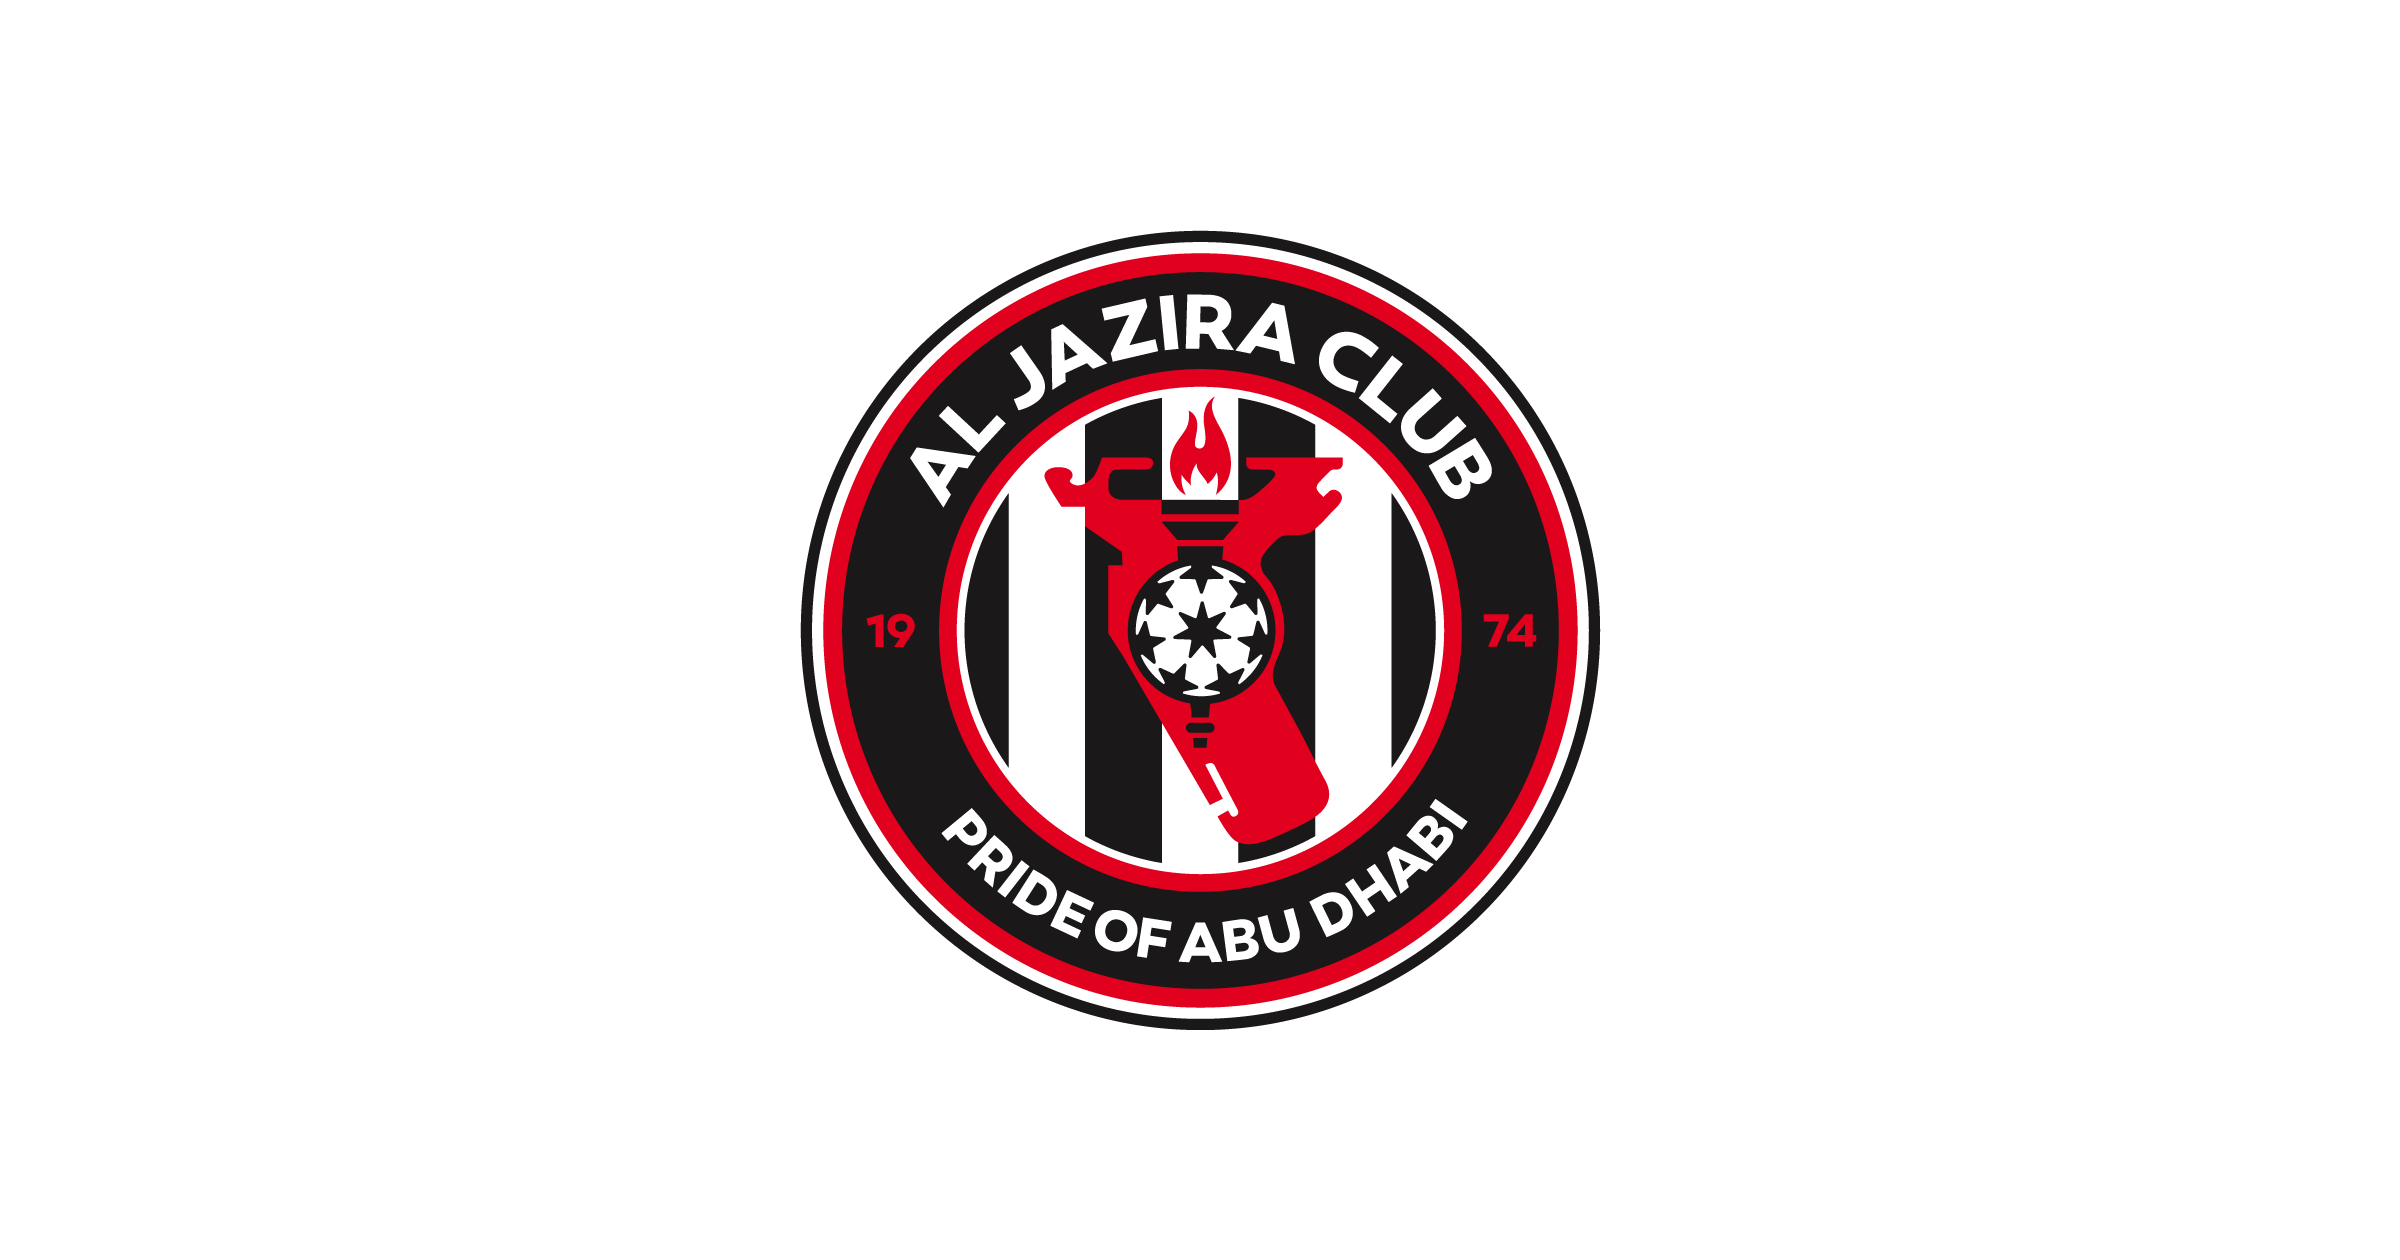 Al jazira sporting club